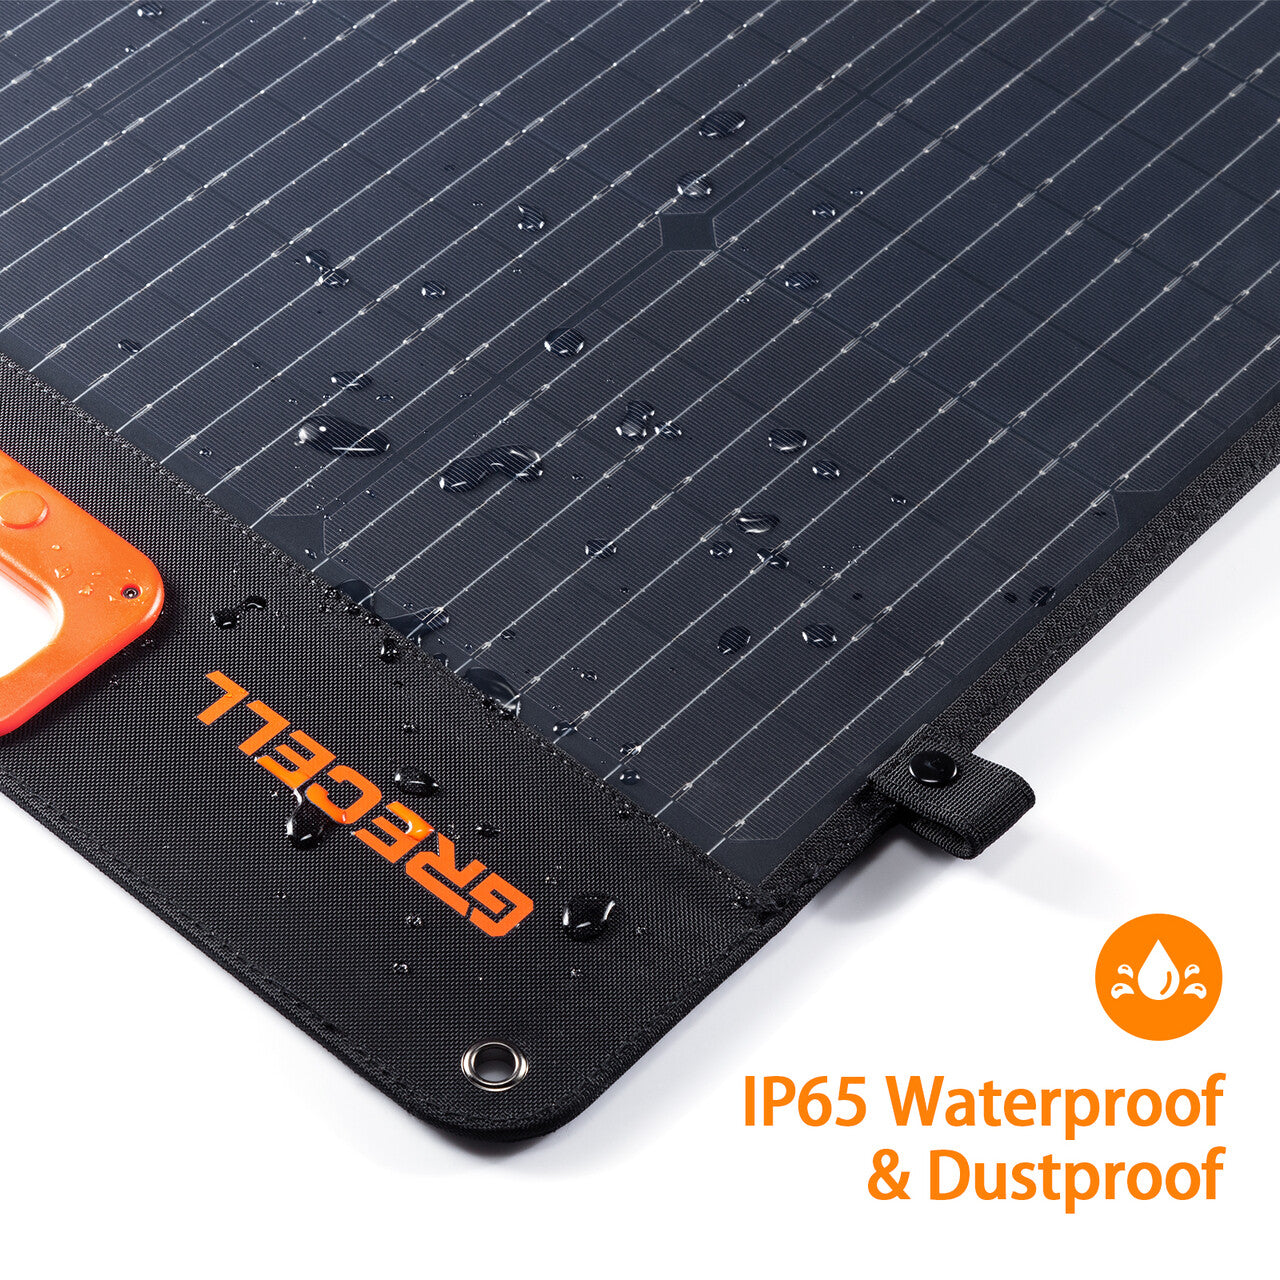 waterproof 200w solar panel